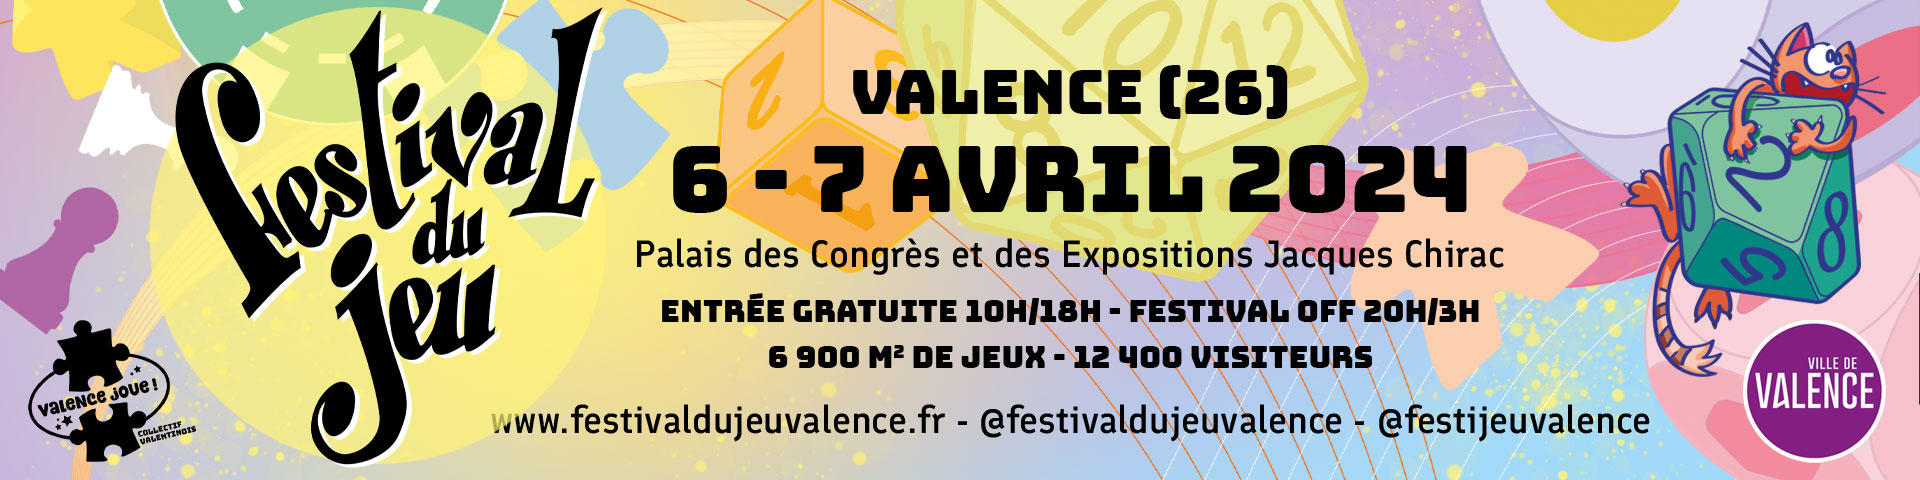 Festival du jeu de société de Valence